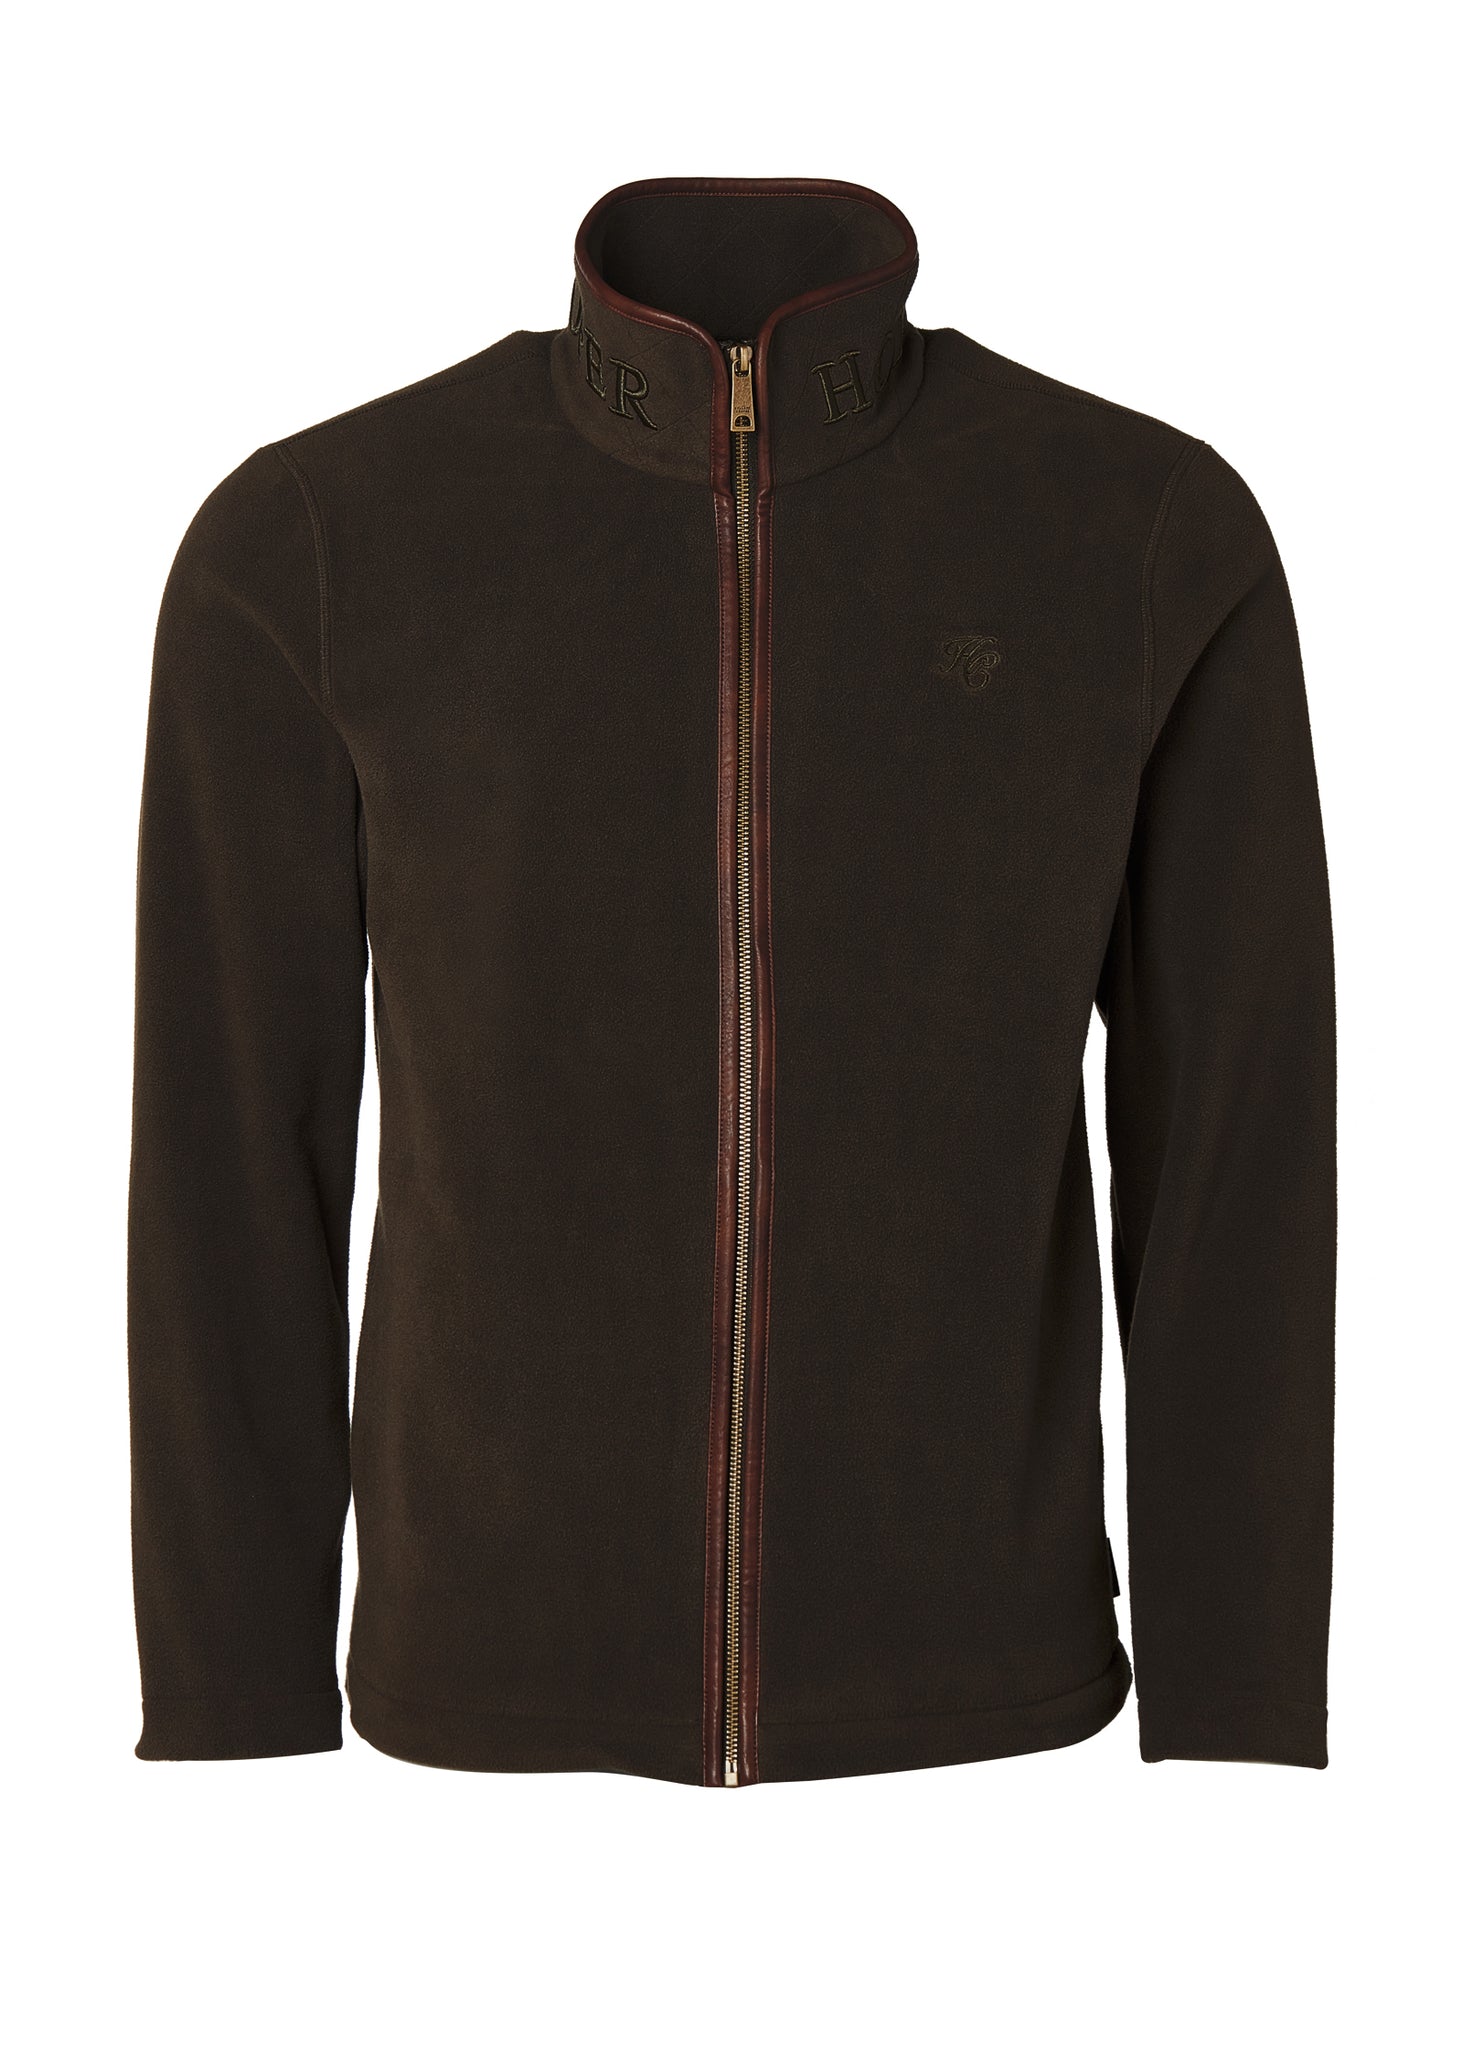 Country Fleece Jacket (Khaki)